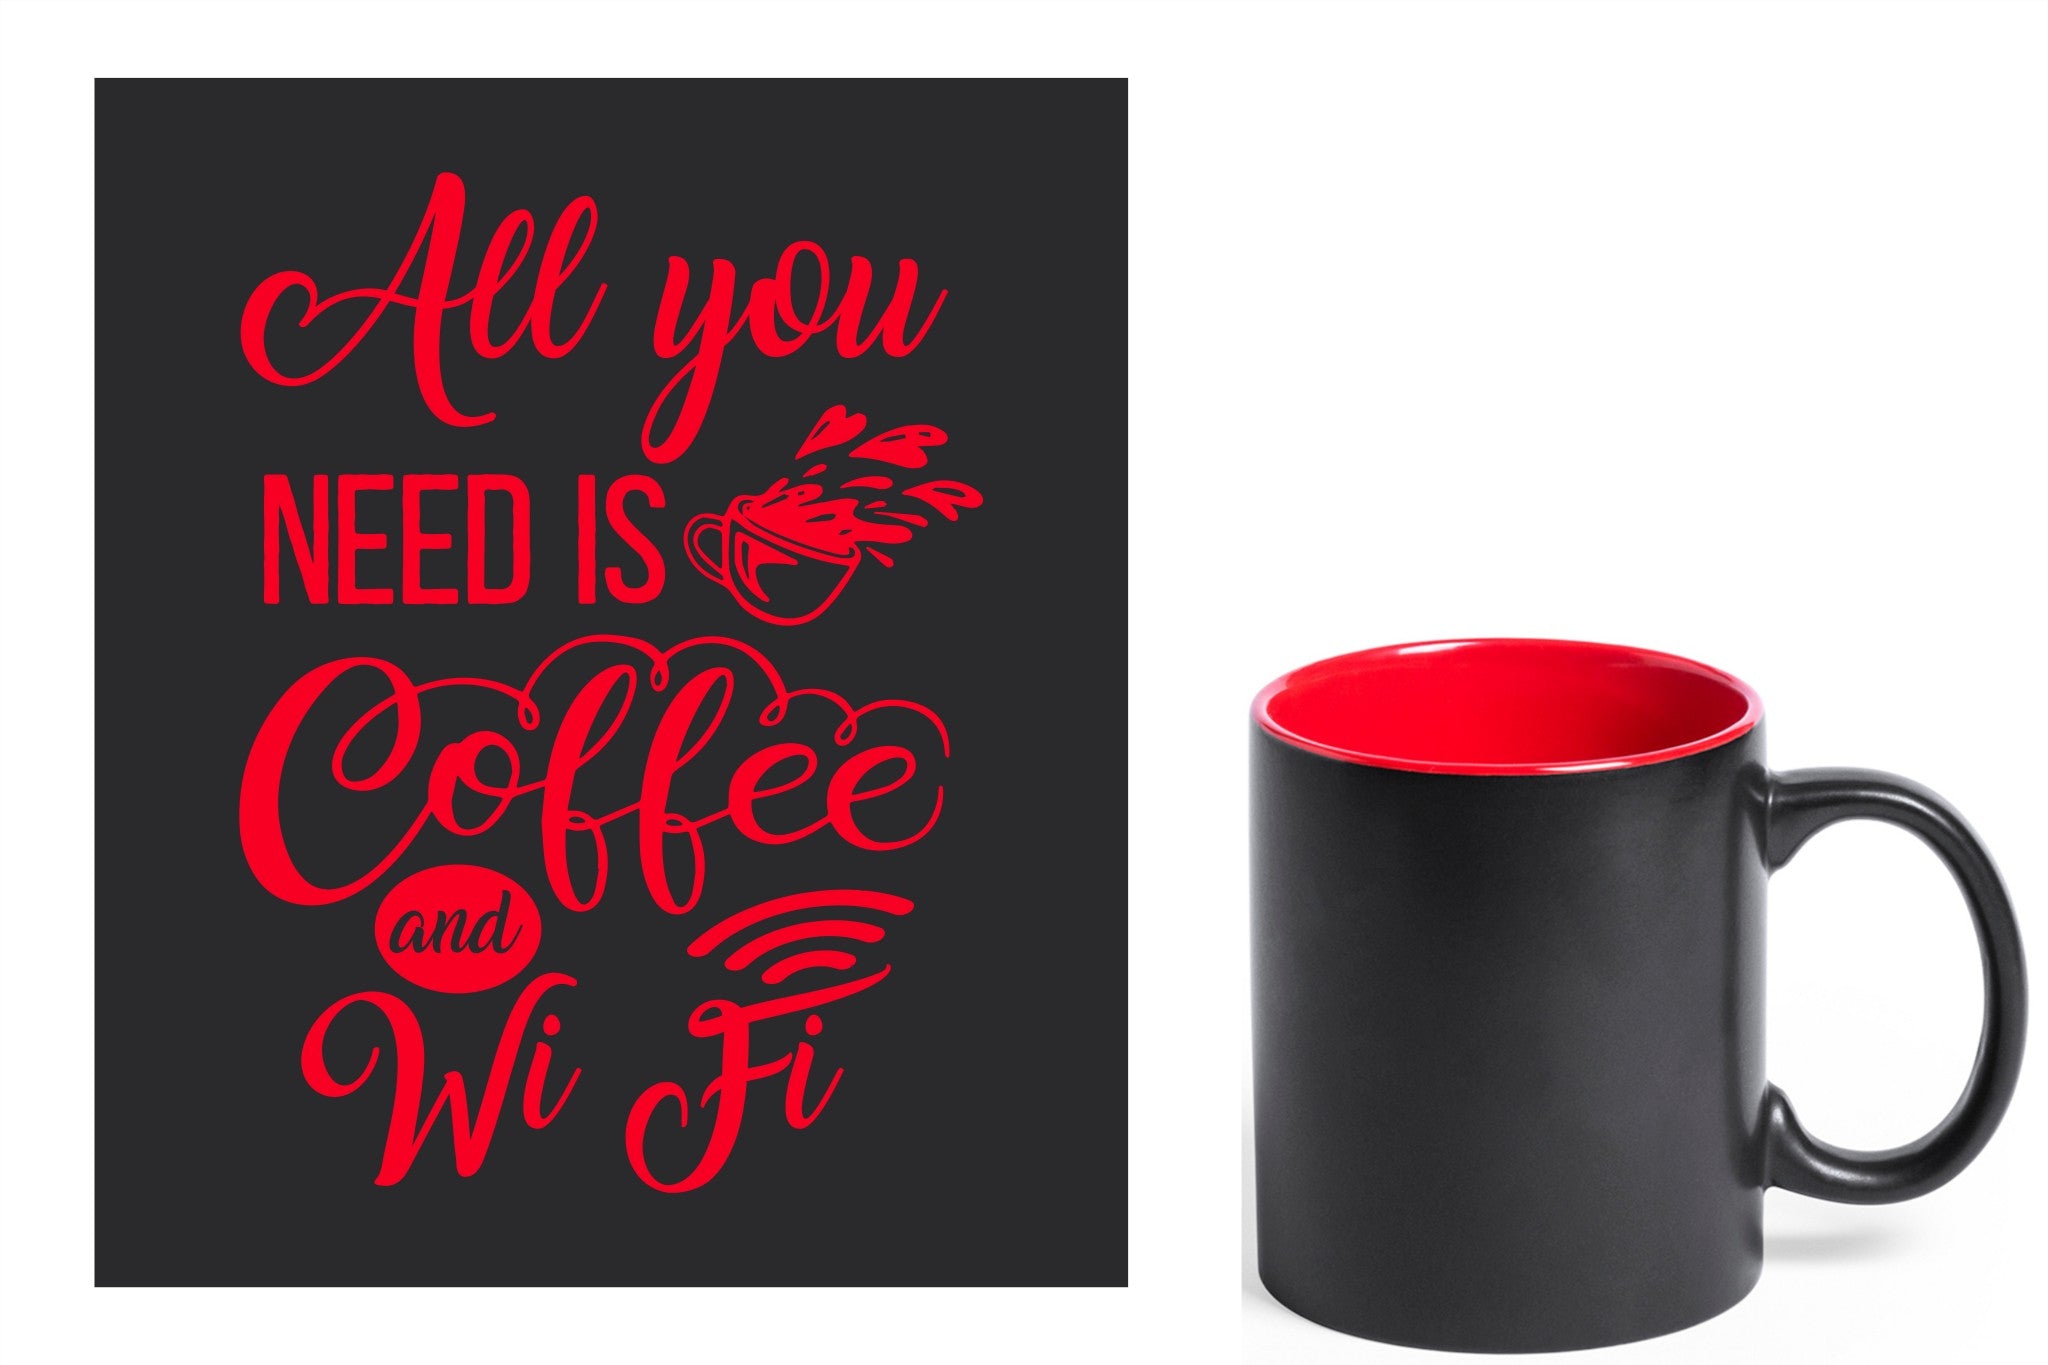 zwarte keramische mok met rode gravure  'All you need is coffee and wifi'.